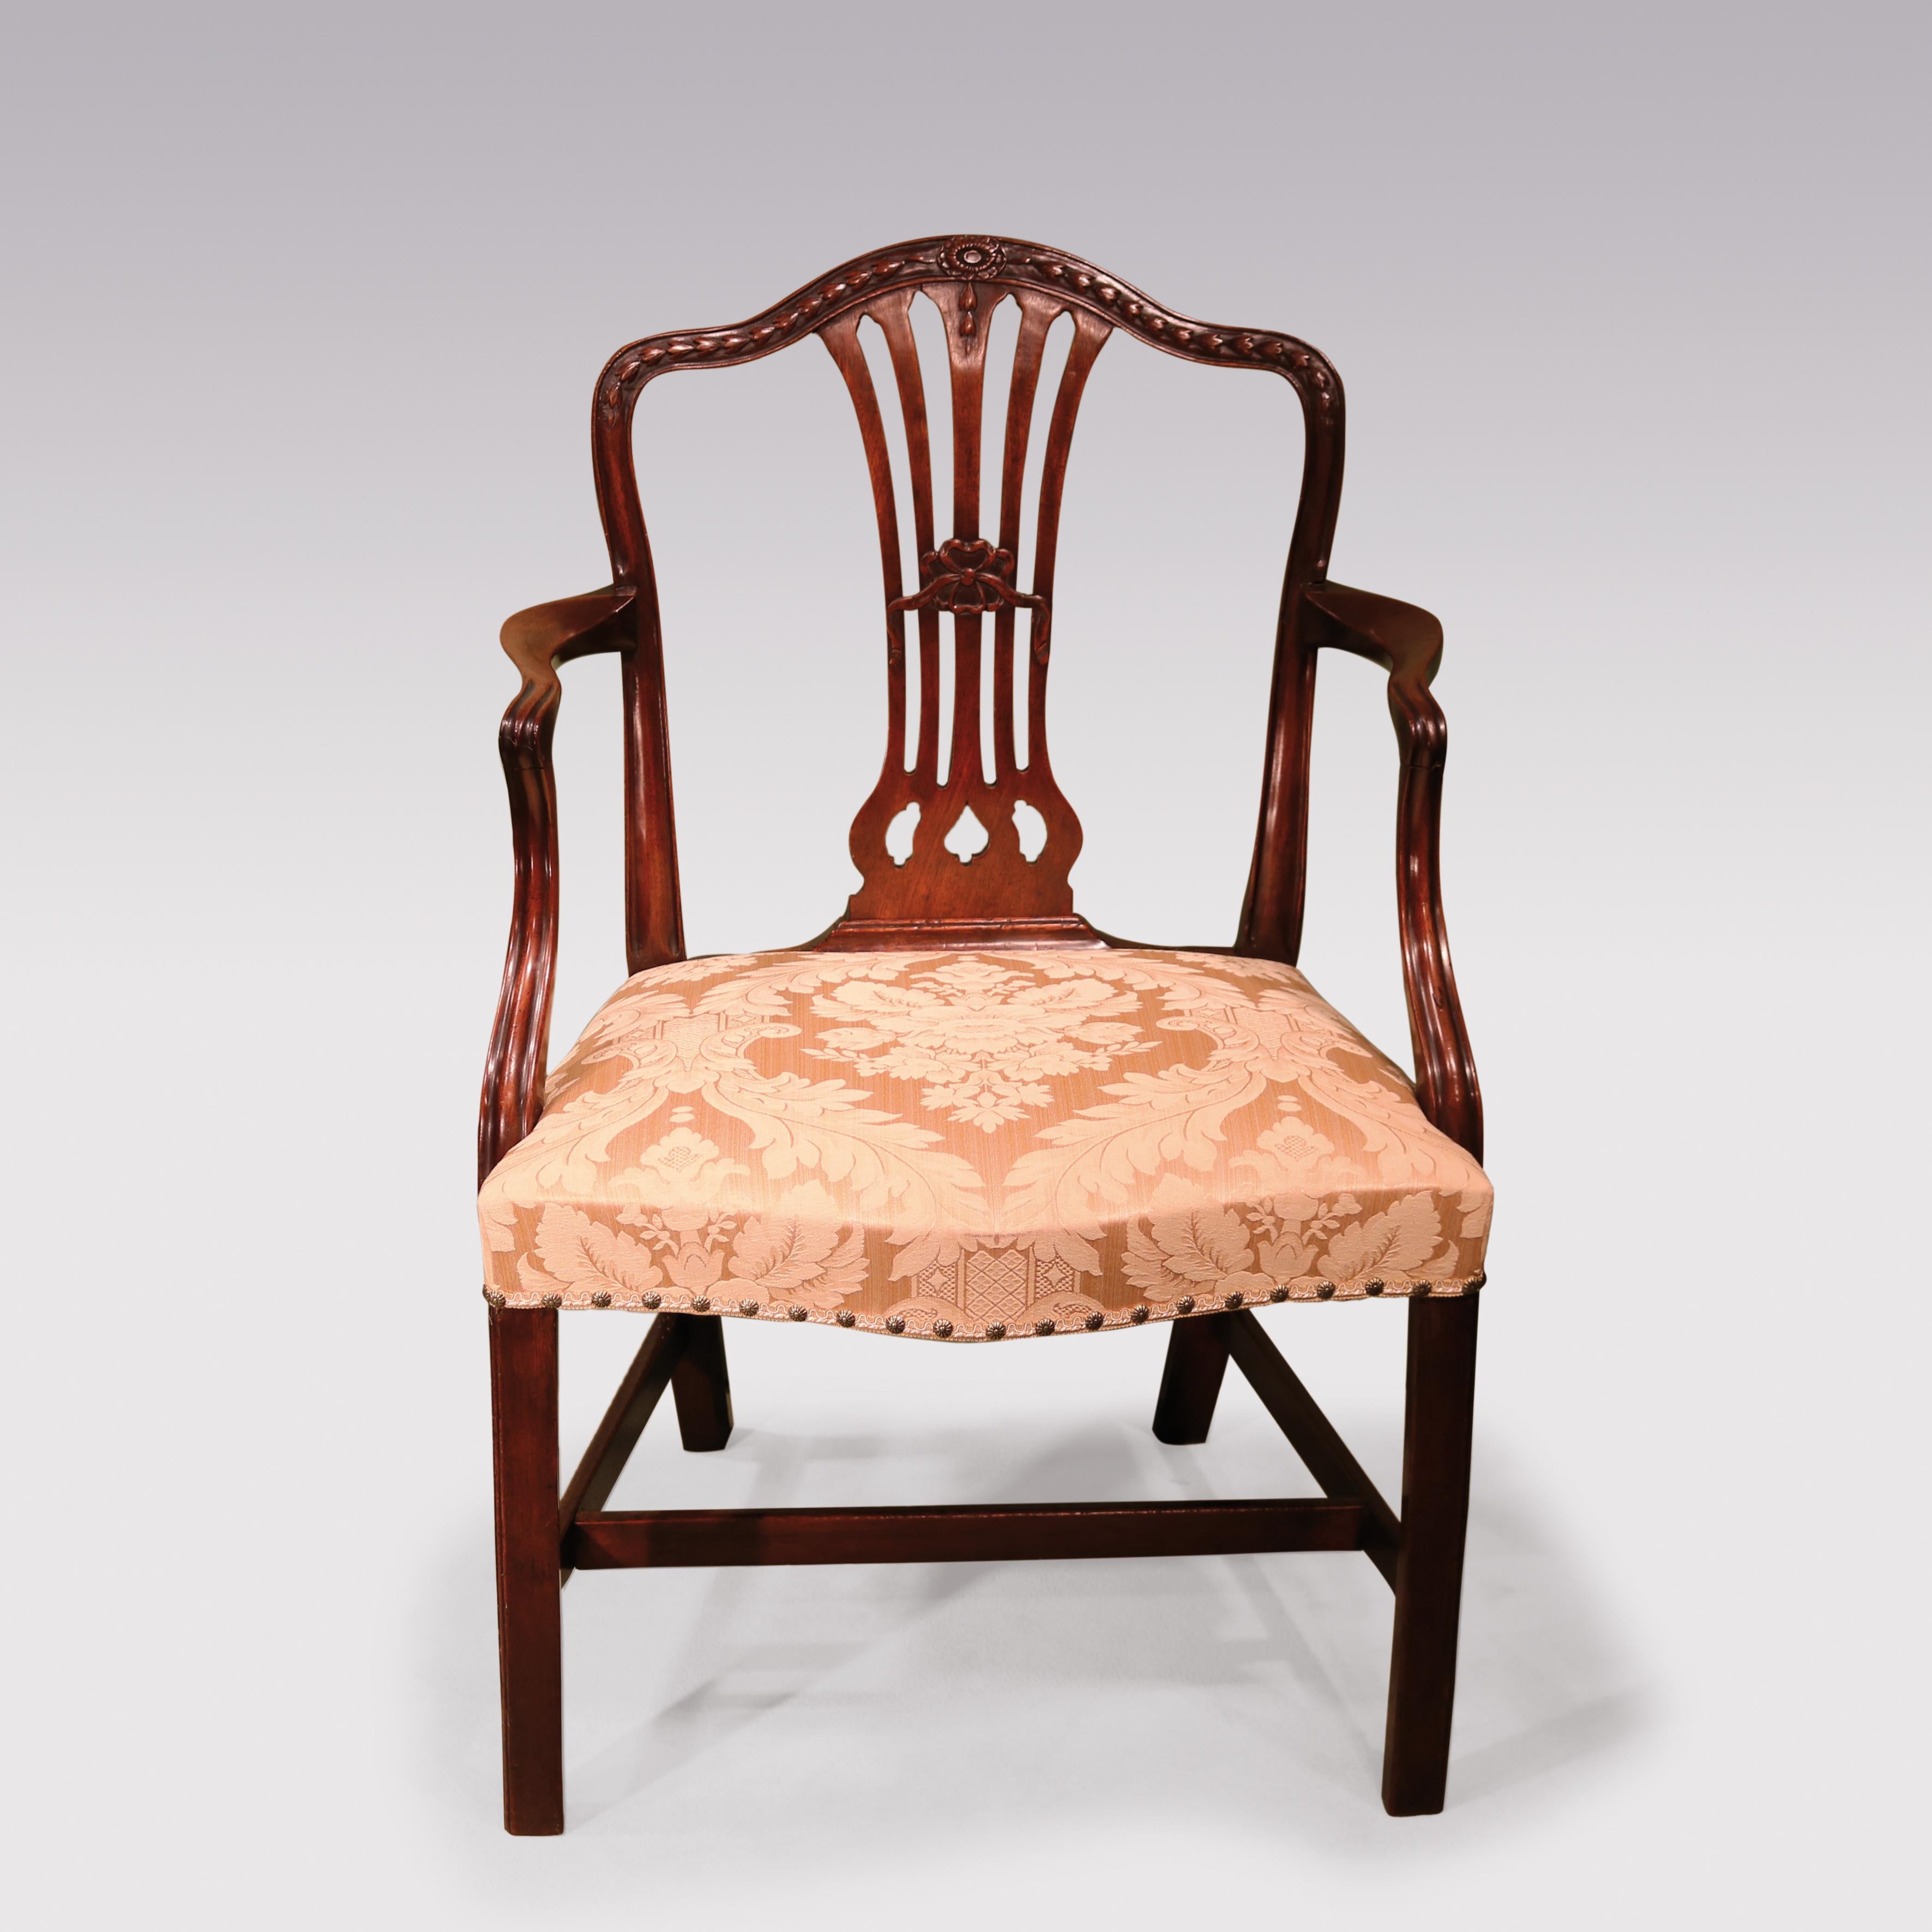 Mahagoni-Sessel mit Kamelrückenlehne aus dem späten 18. Jahrhundert aus der George-III-Periode, obere Schiene geschnitzt mit huskenförmigen und zentralen Pateraen- und Bandschnitzereien. Der Stuhl mit geformten Rückenlehnen und serpentinenförmigem